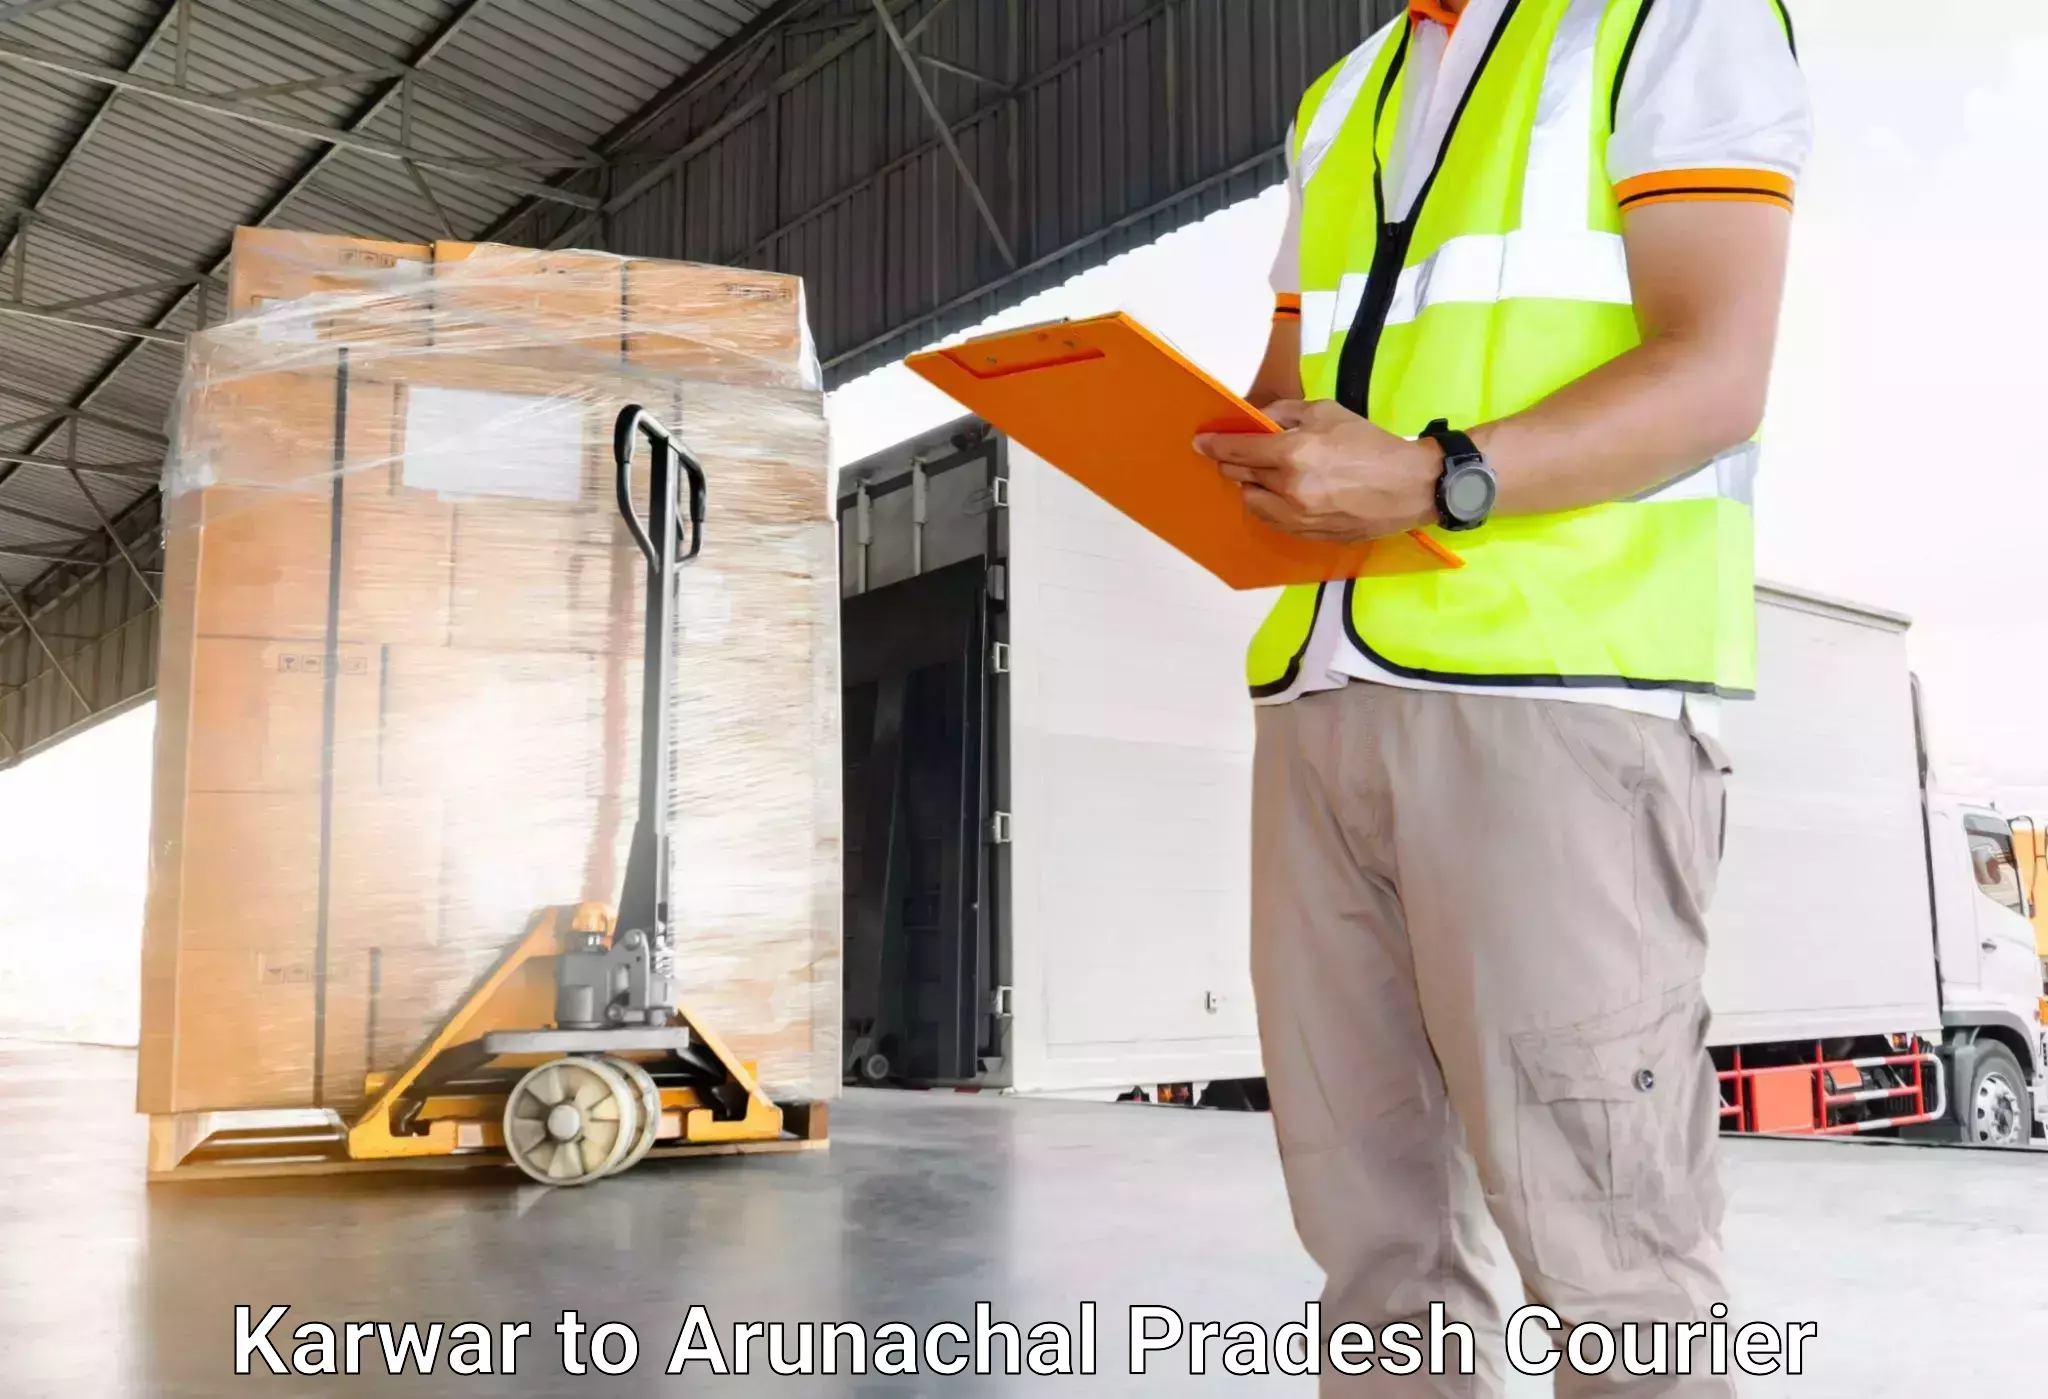 Luggage delivery network Karwar to Yazali